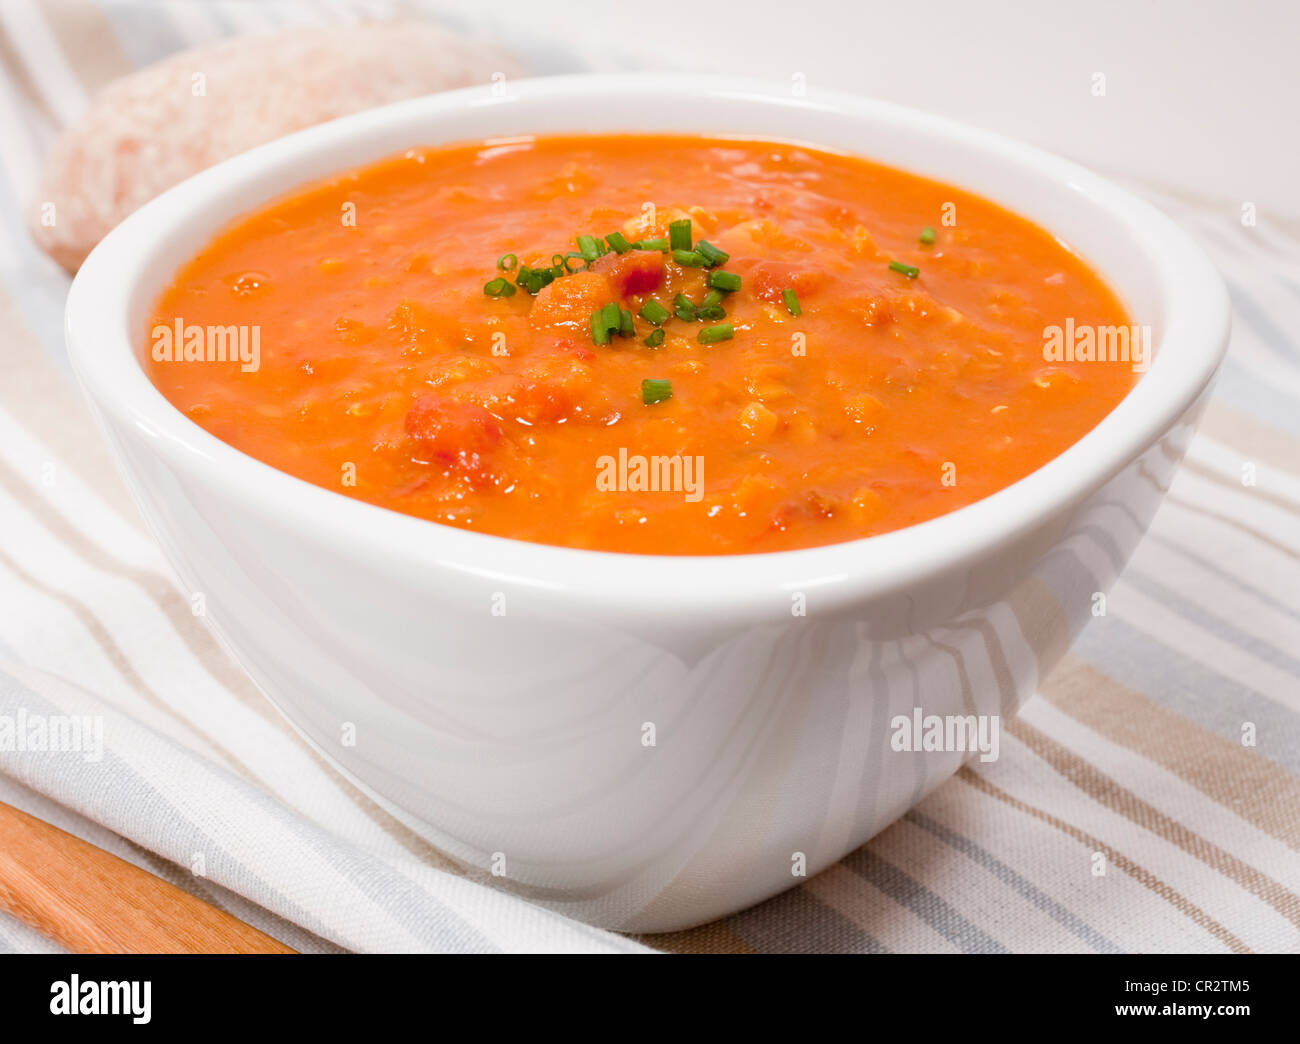 Eine Schüssel mit Linsen und Tomaten-Suppe mit Schnittlauch garniert. Stockfoto